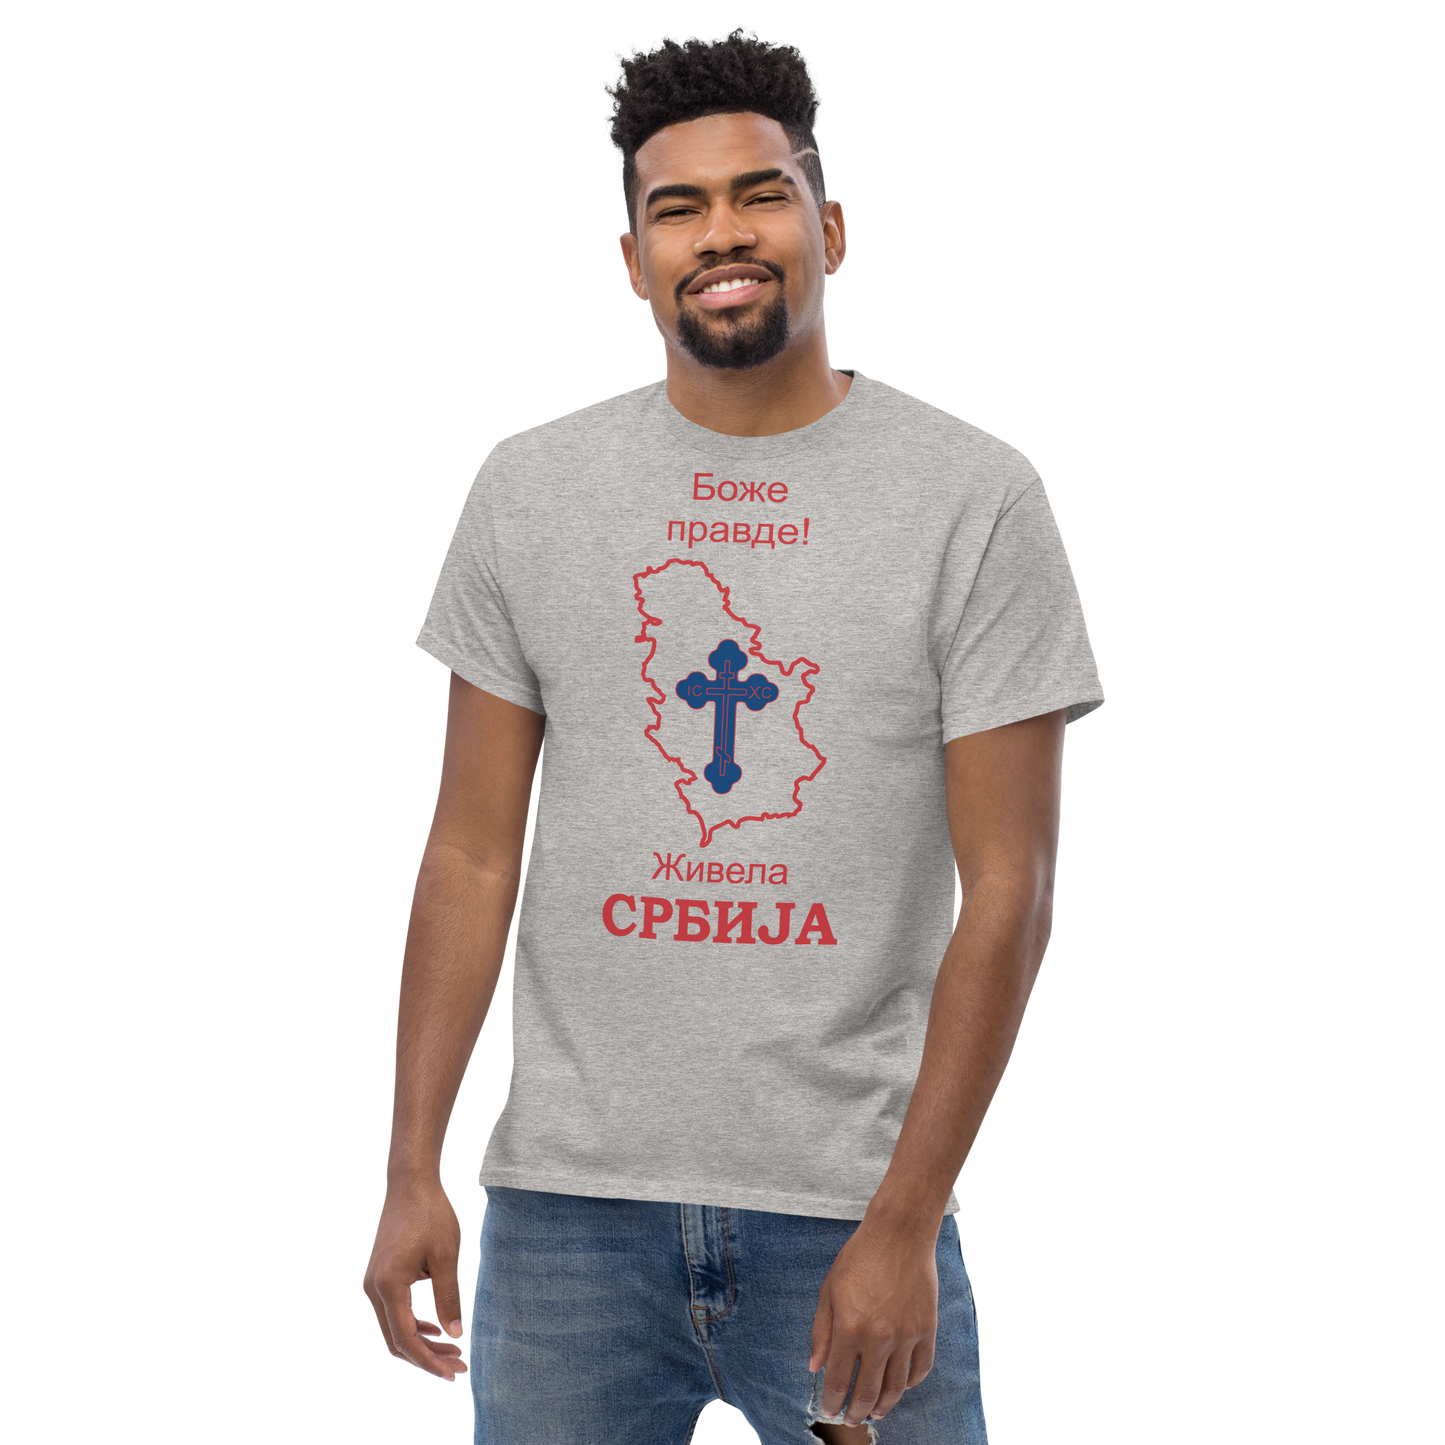 Srbija Klassisches Herren-T-Shirt Boze pravde